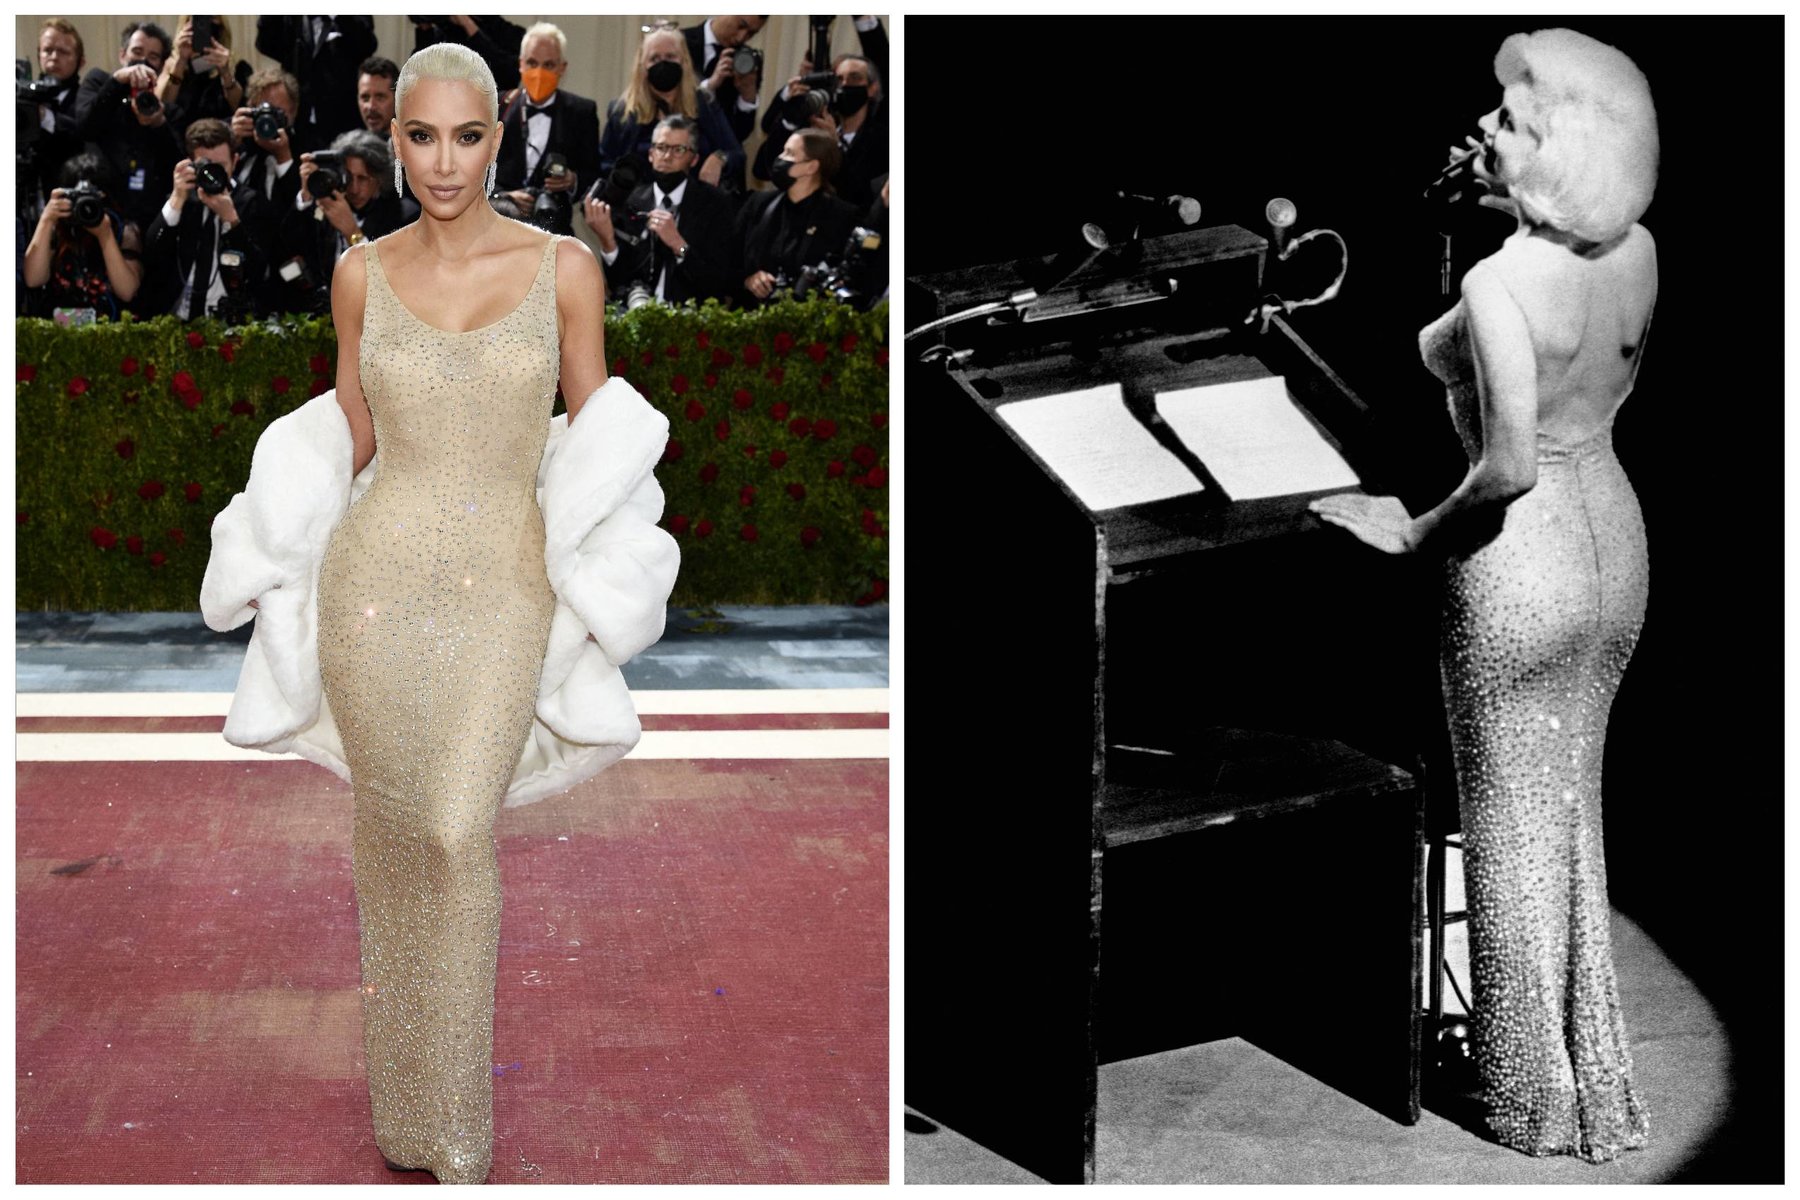 Kim Kardashian: Ιστορική η εμφάνισή της στο Met Gala 2022 με το θρυλικό φόρεμα της Marilyn Monroe από το 1962